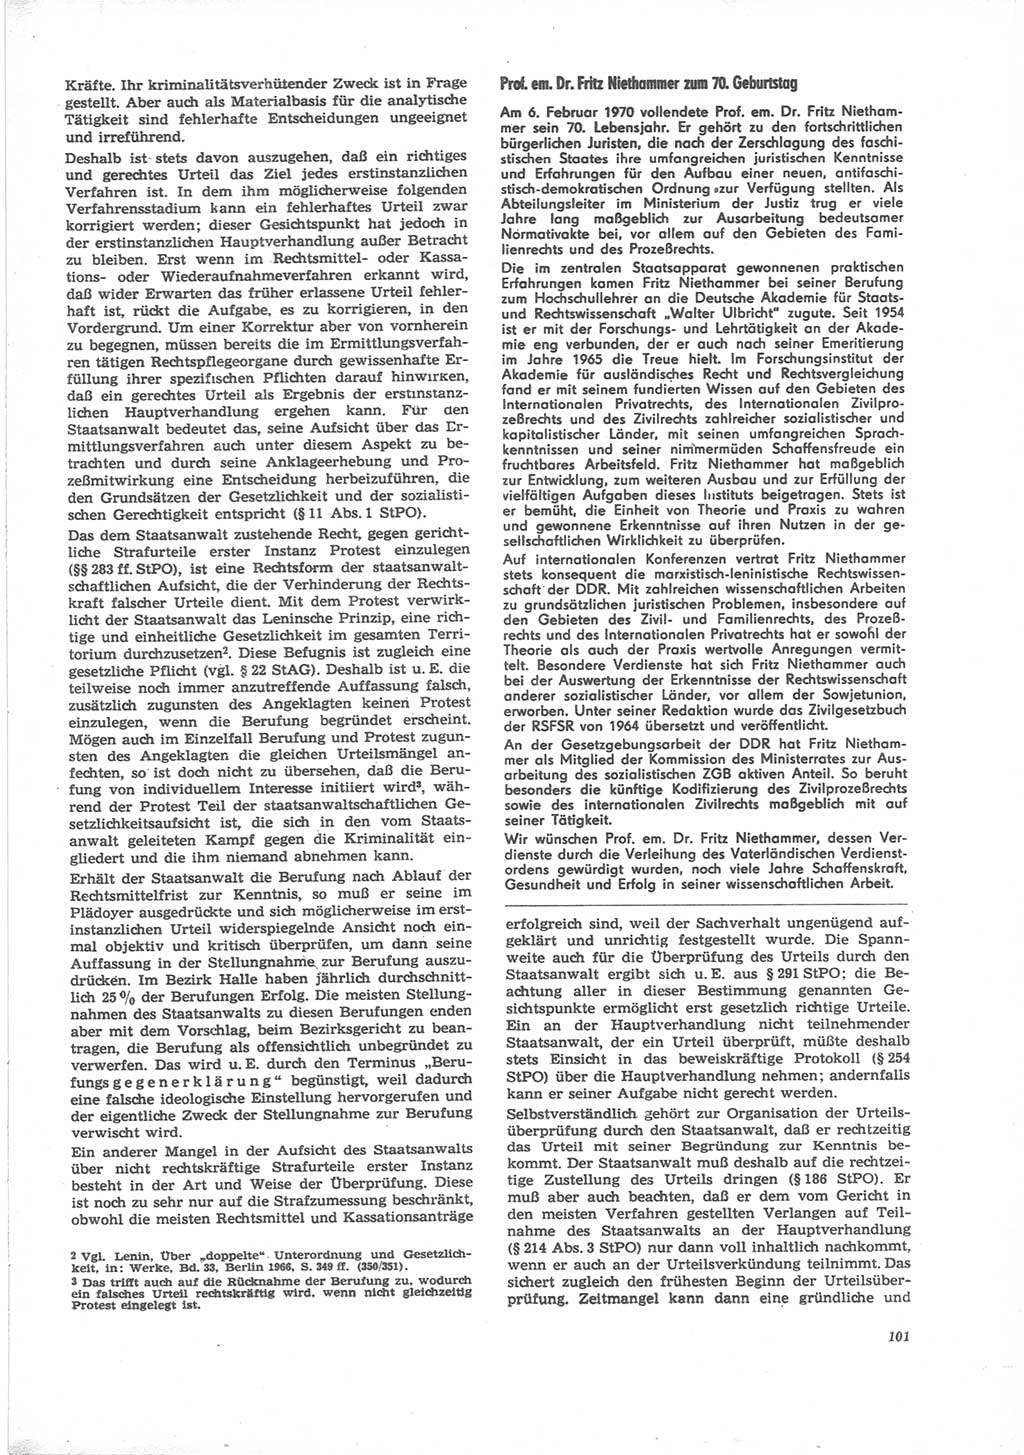 Neue Justiz (NJ), Zeitschrift für Recht und Rechtswissenschaft [Deutsche Demokratische Republik (DDR)], 24. Jahrgang 1970, Seite 101 (NJ DDR 1970, S. 101)